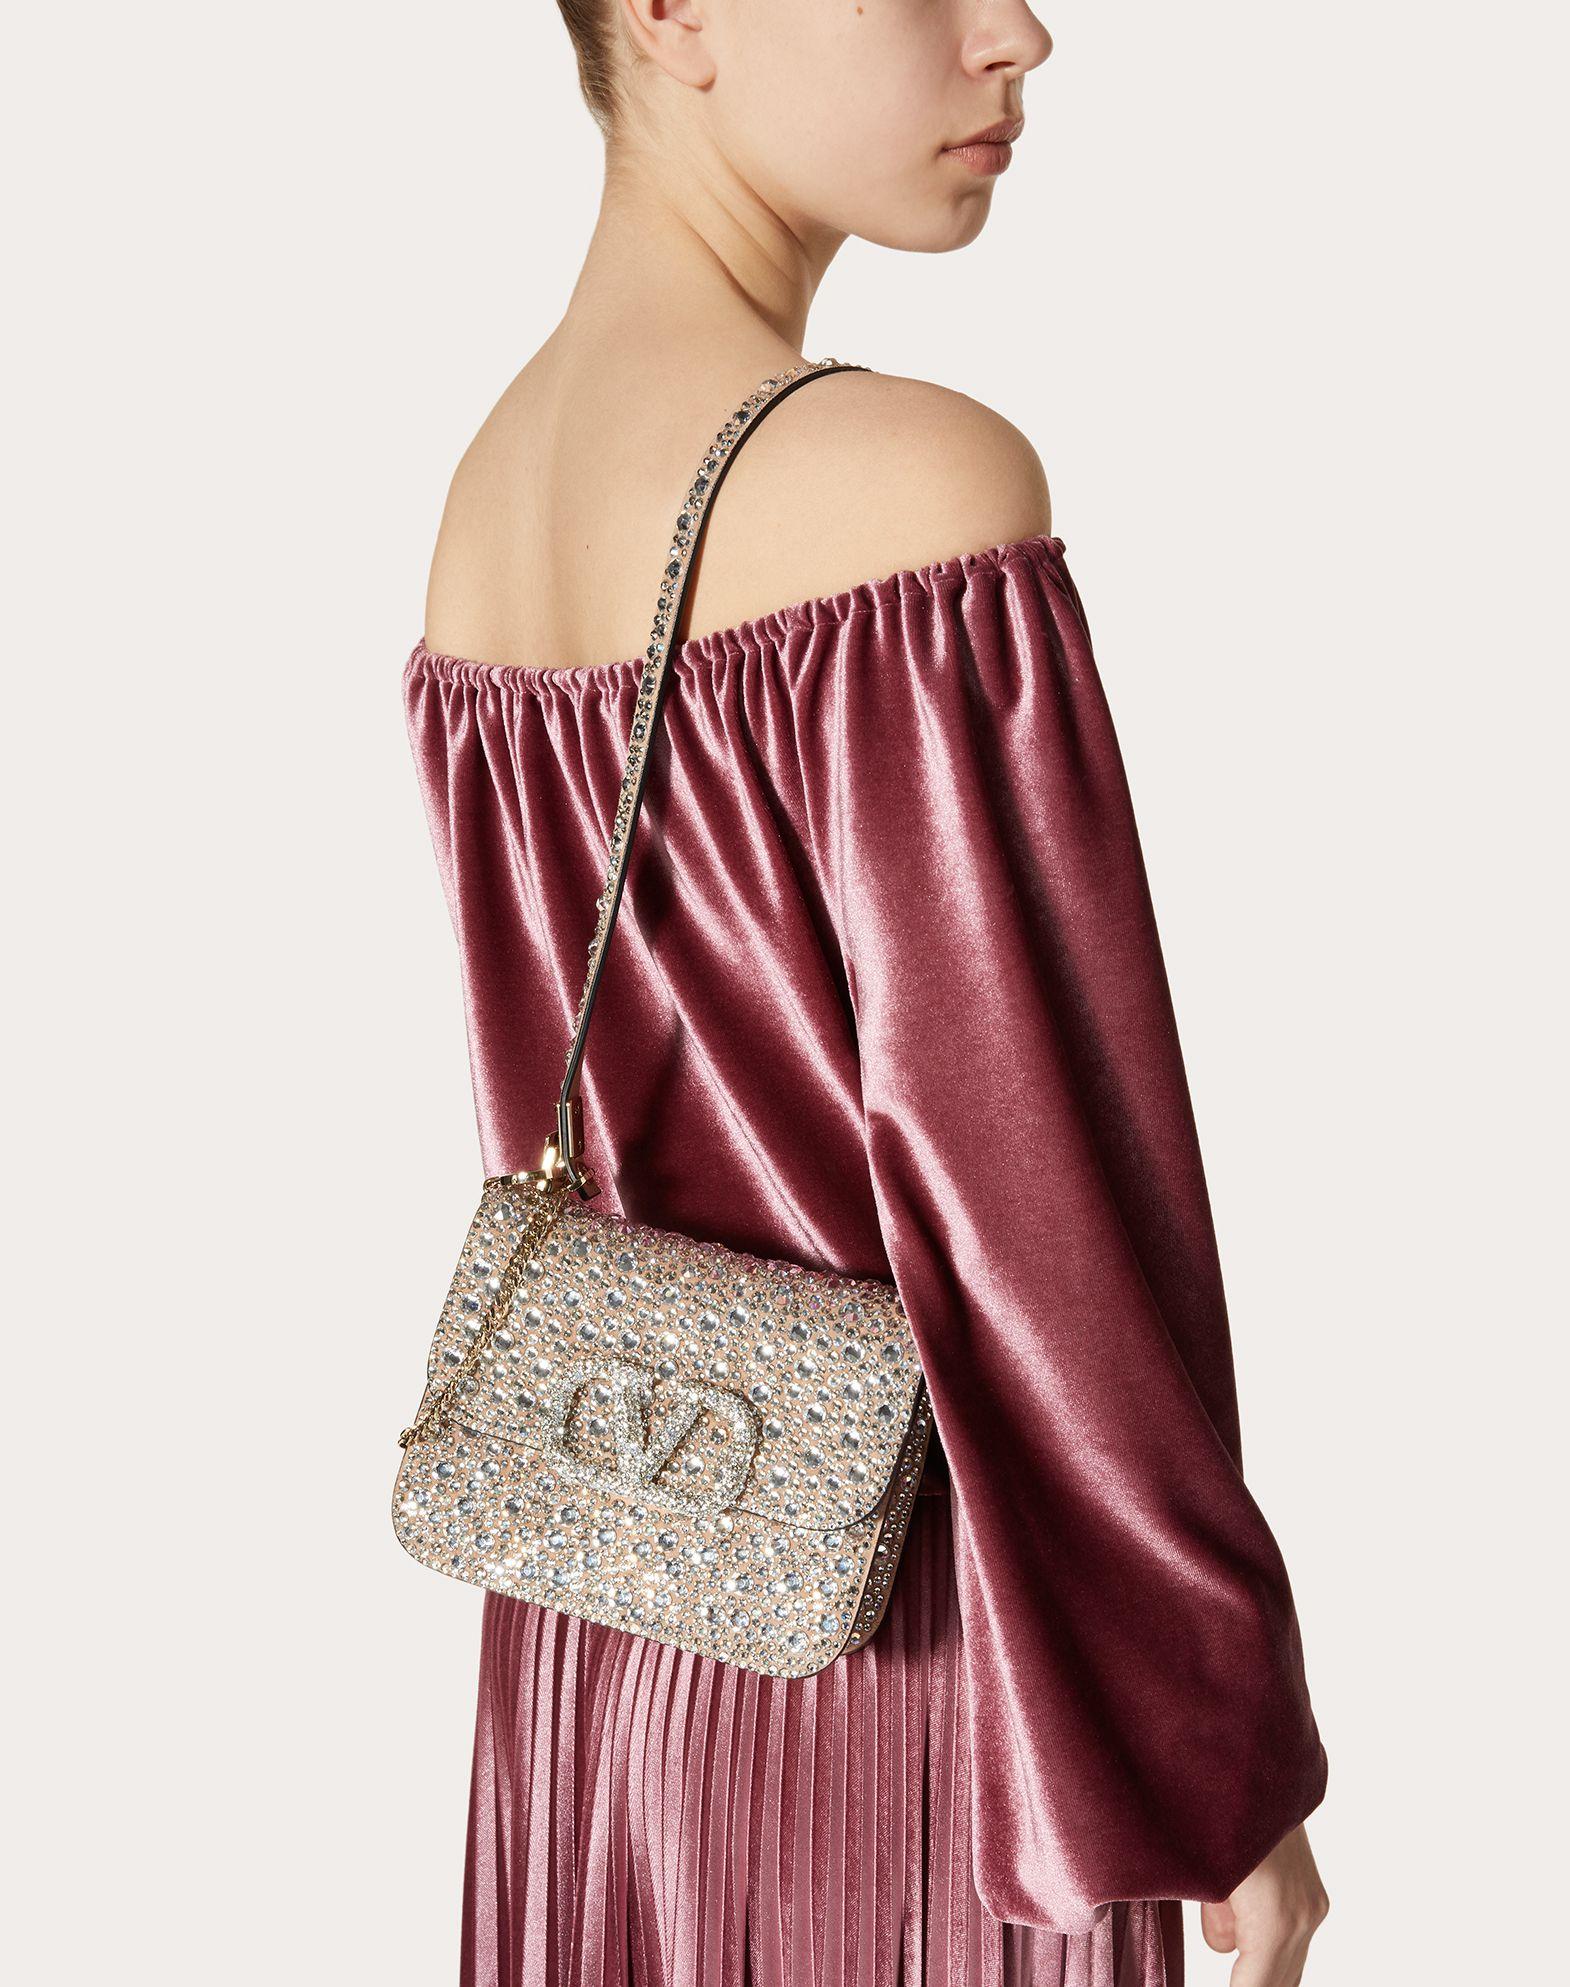 VSLING small Swarovski crystal-embellished textured-leather shoulder bag